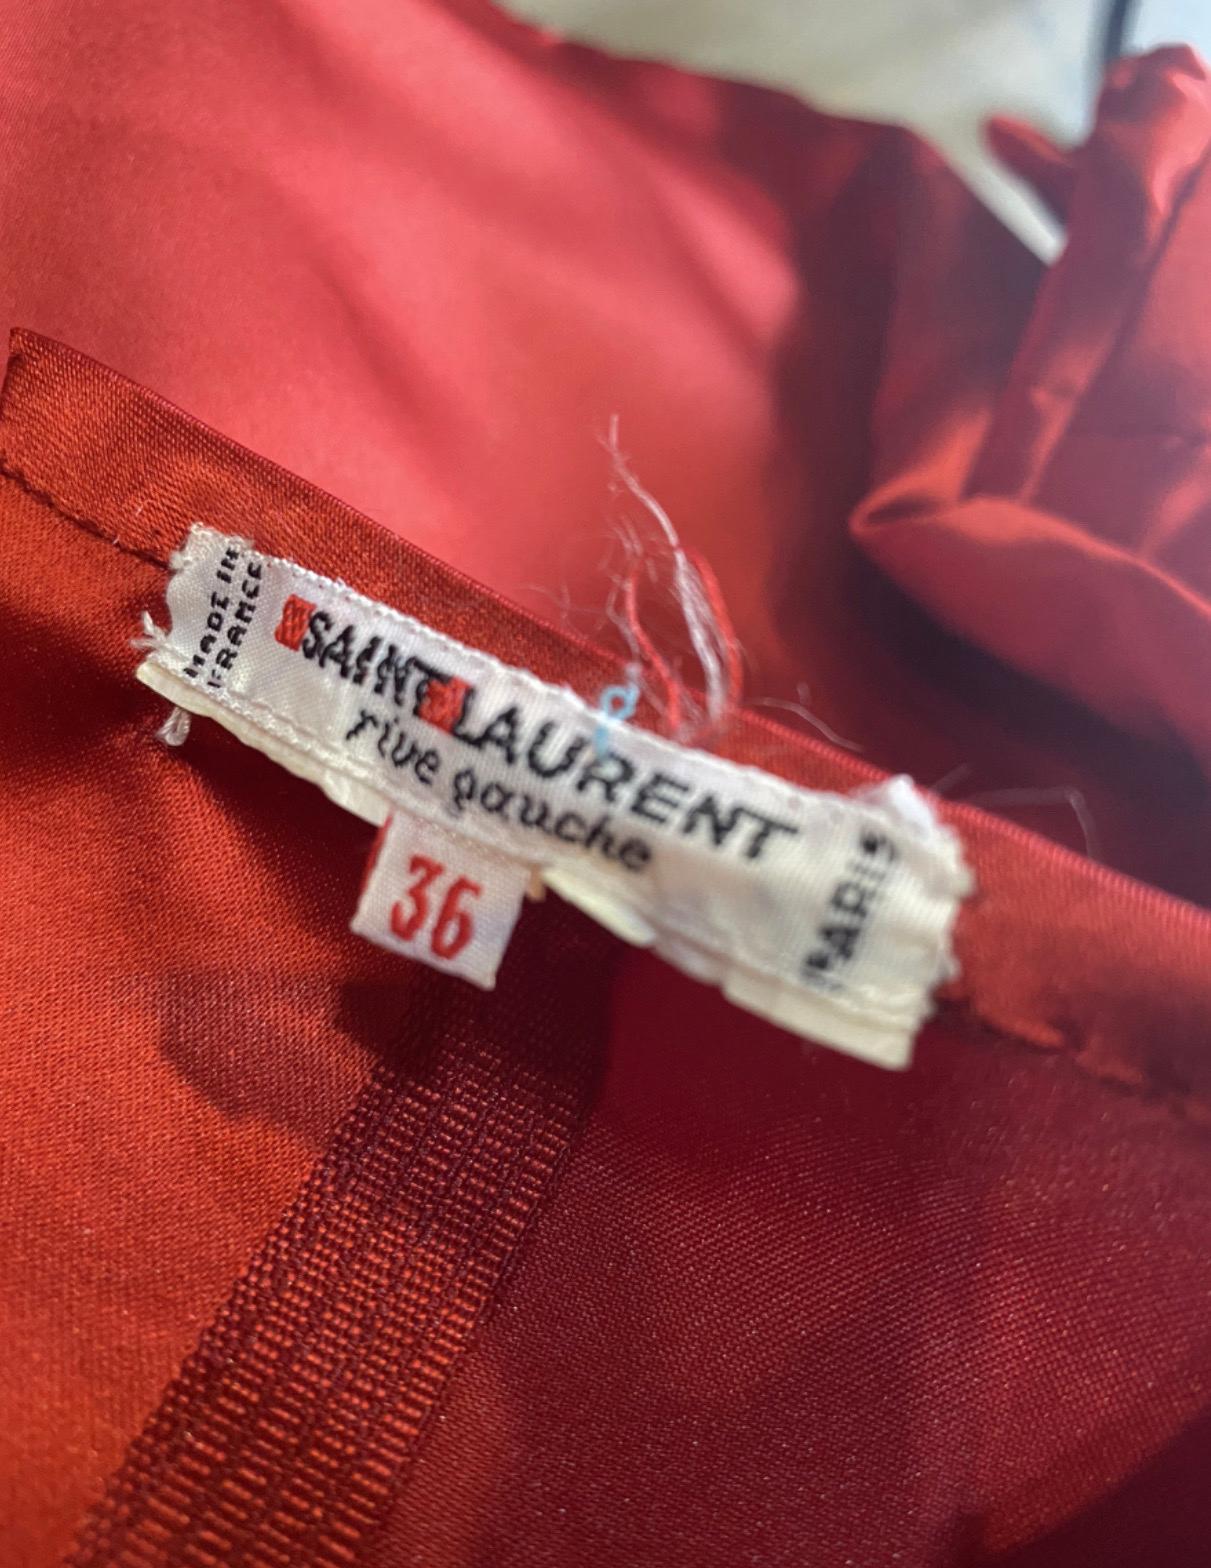 Robe Yves Saint Laurent en satin de soie rouge intense, taille 36, manches ballons brodées. Le seul défaut est un petit bouton dans le dos qui est cassé, mesures : épaule 37cm manche 30cm poitrine 42cm taille 35cm longueur 140cm 
Très bon état.